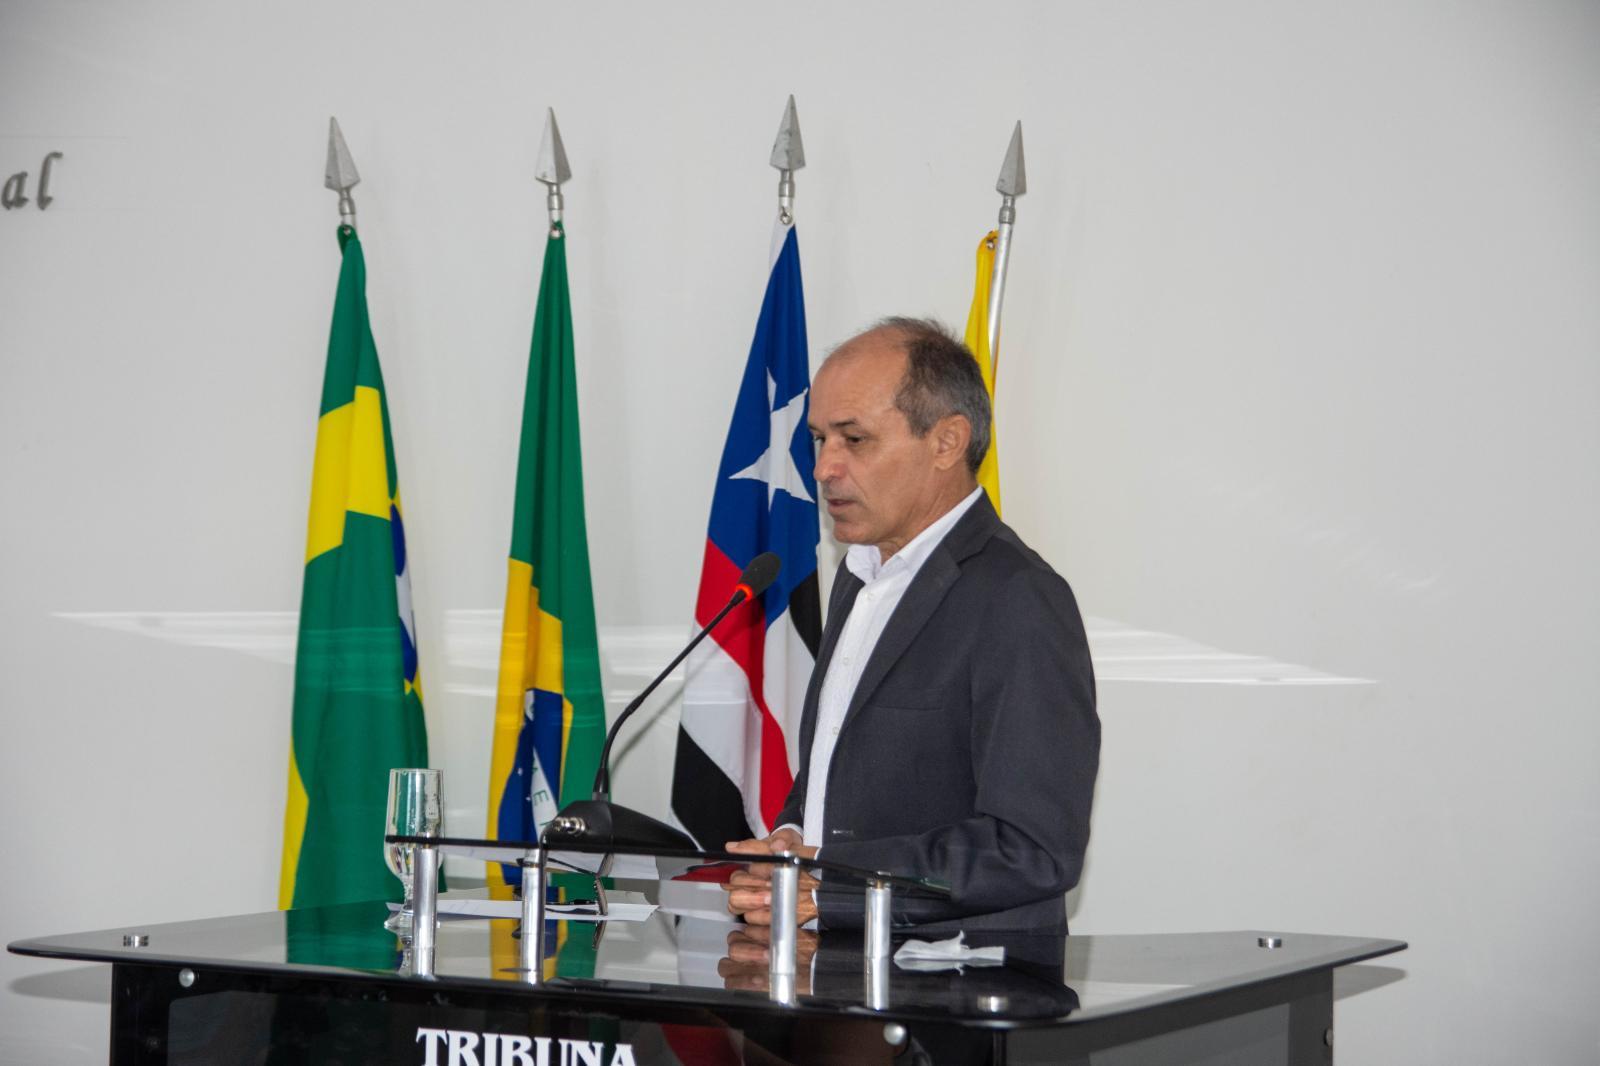 “A população precisa ficar atenta aos recursos que estão chegando ao município” disse o presidente da Câmara de Vereadores de Governador Nunes Freire